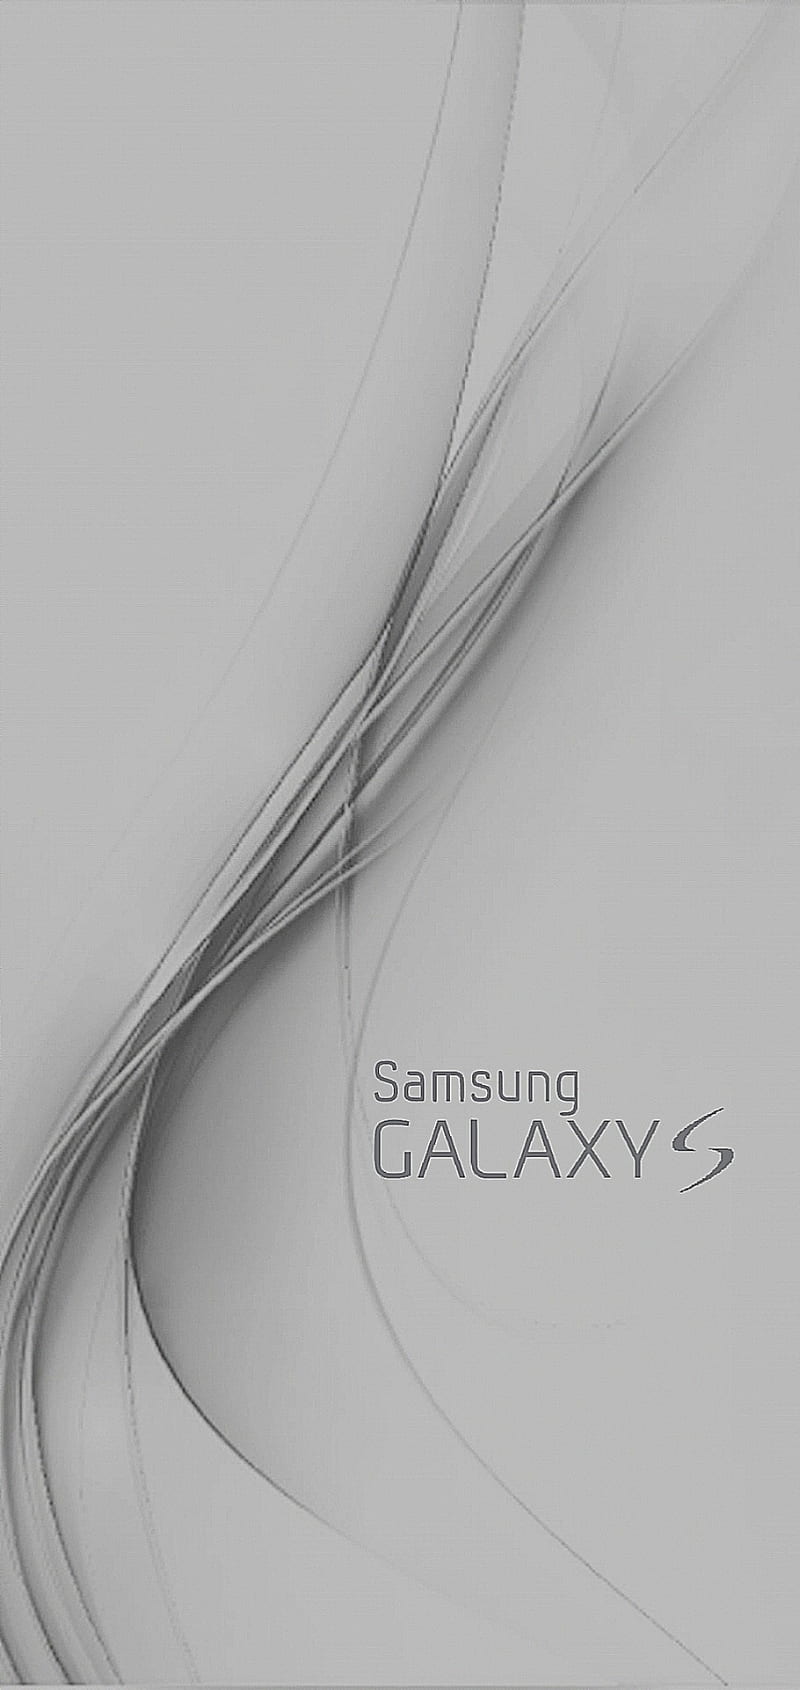 Chiếc điện thoại Samsung Galaxy S của bạn đang cần một chút sắc màu mới? Hãy tải ngay hình nền điện thoại Samsung Galaxy S xám HD với chủ đề bạn yêu thích. Những hình ảnh chất lượng cao đầy tính nghệ thuật sẽ đem đến cho bạn một trải nghiệm tuyệt vời sáng tạo.